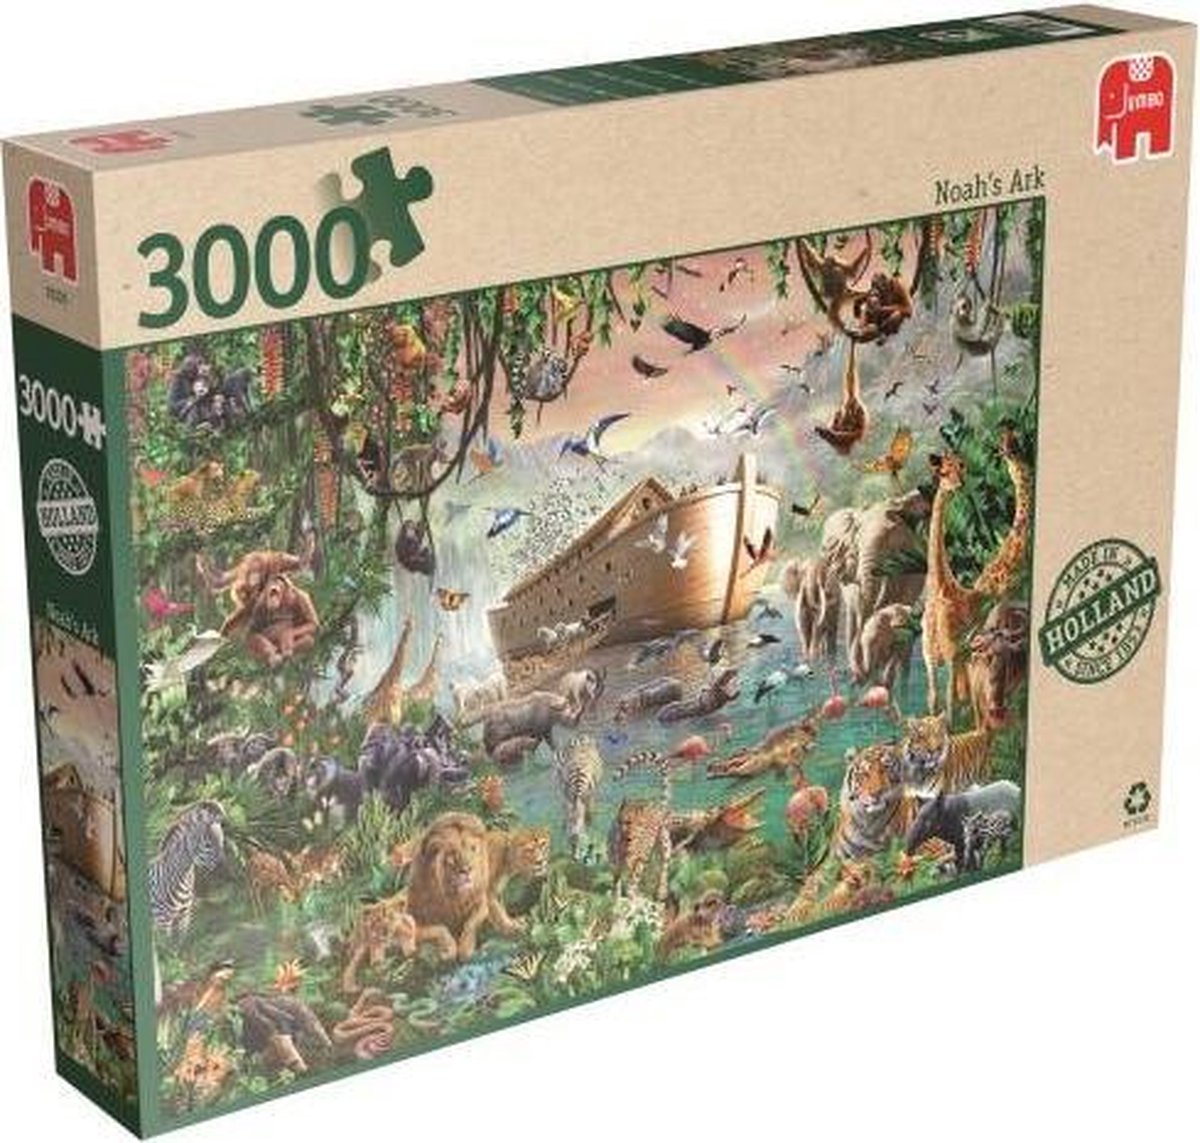 Jumbo Premium Collection Puzzel Ark van Noah - Legpuzzel - 3000 stukjes